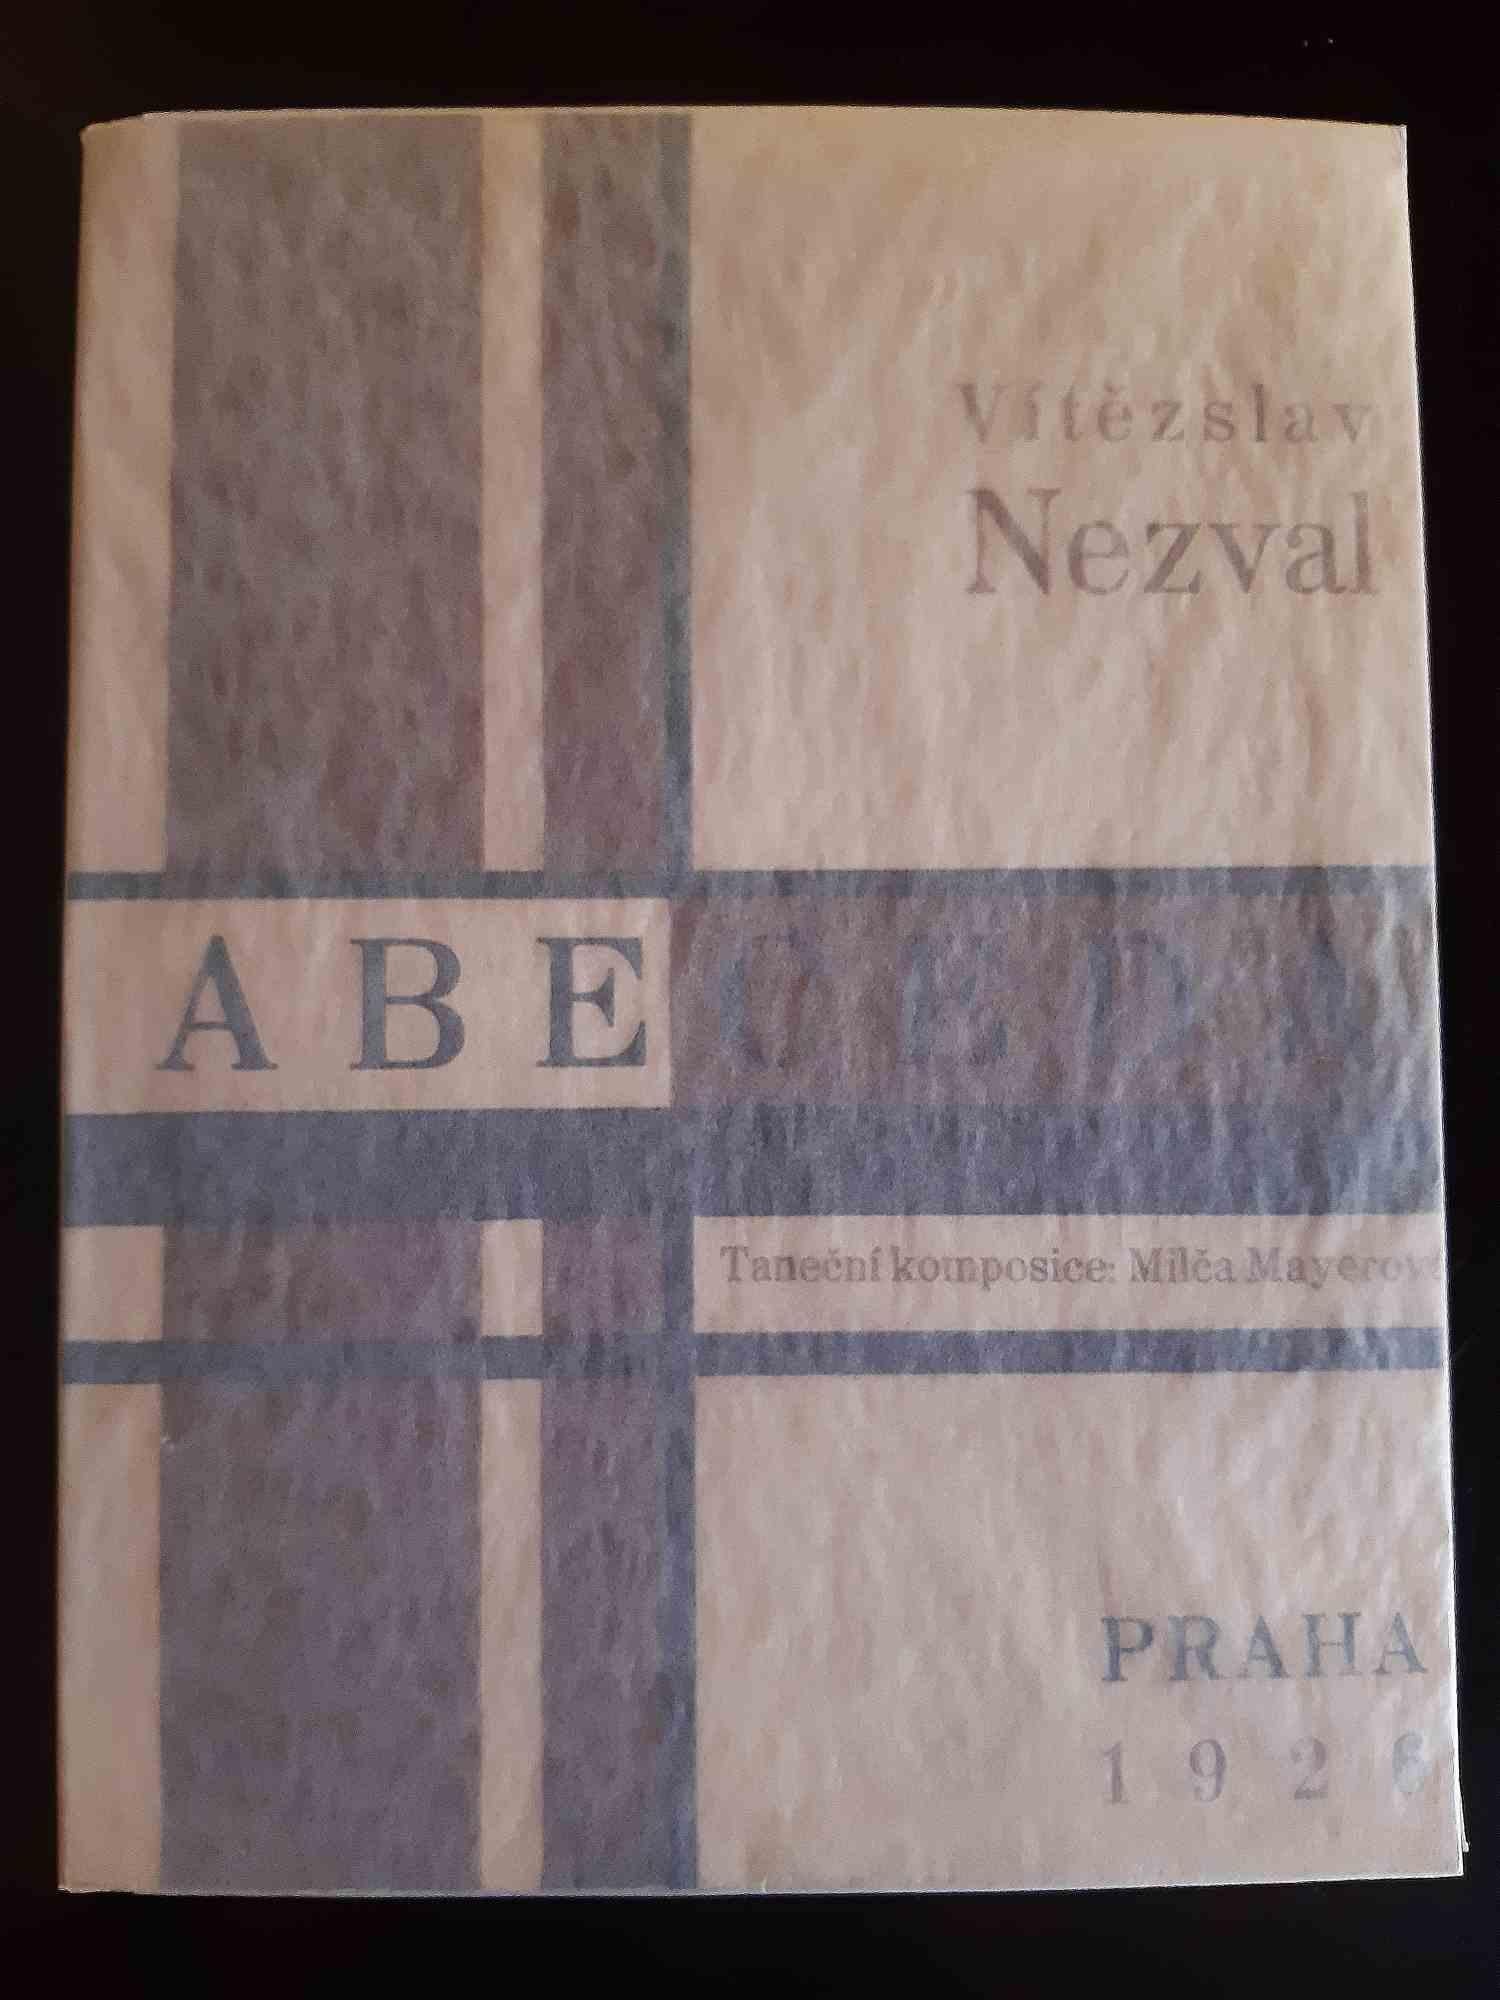 Vítezslav Nezval - ABECEDA - Rare Book Illustrated by Karel Teige - 1926  For Sale at 1stDibs